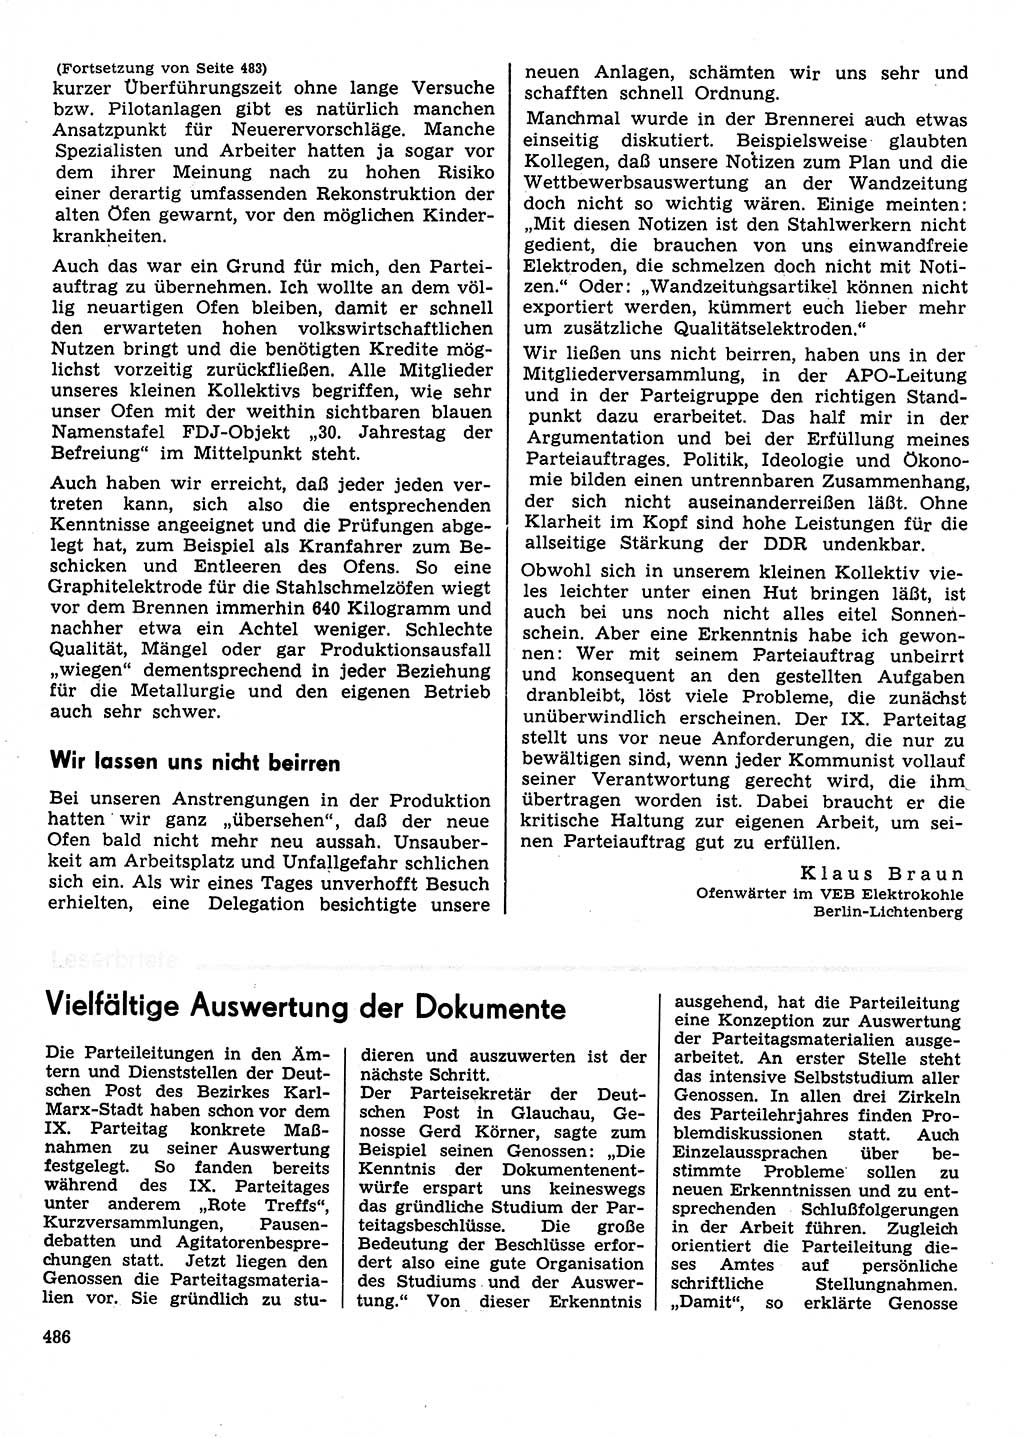 Neuer Weg (NW), Organ des Zentralkomitees (ZK) der SED (Sozialistische Einheitspartei Deutschlands) für Fragen des Parteilebens, 31. Jahrgang [Deutsche Demokratische Republik (DDR)] 1976, Seite 486 (NW ZK SED DDR 1976, S. 486)